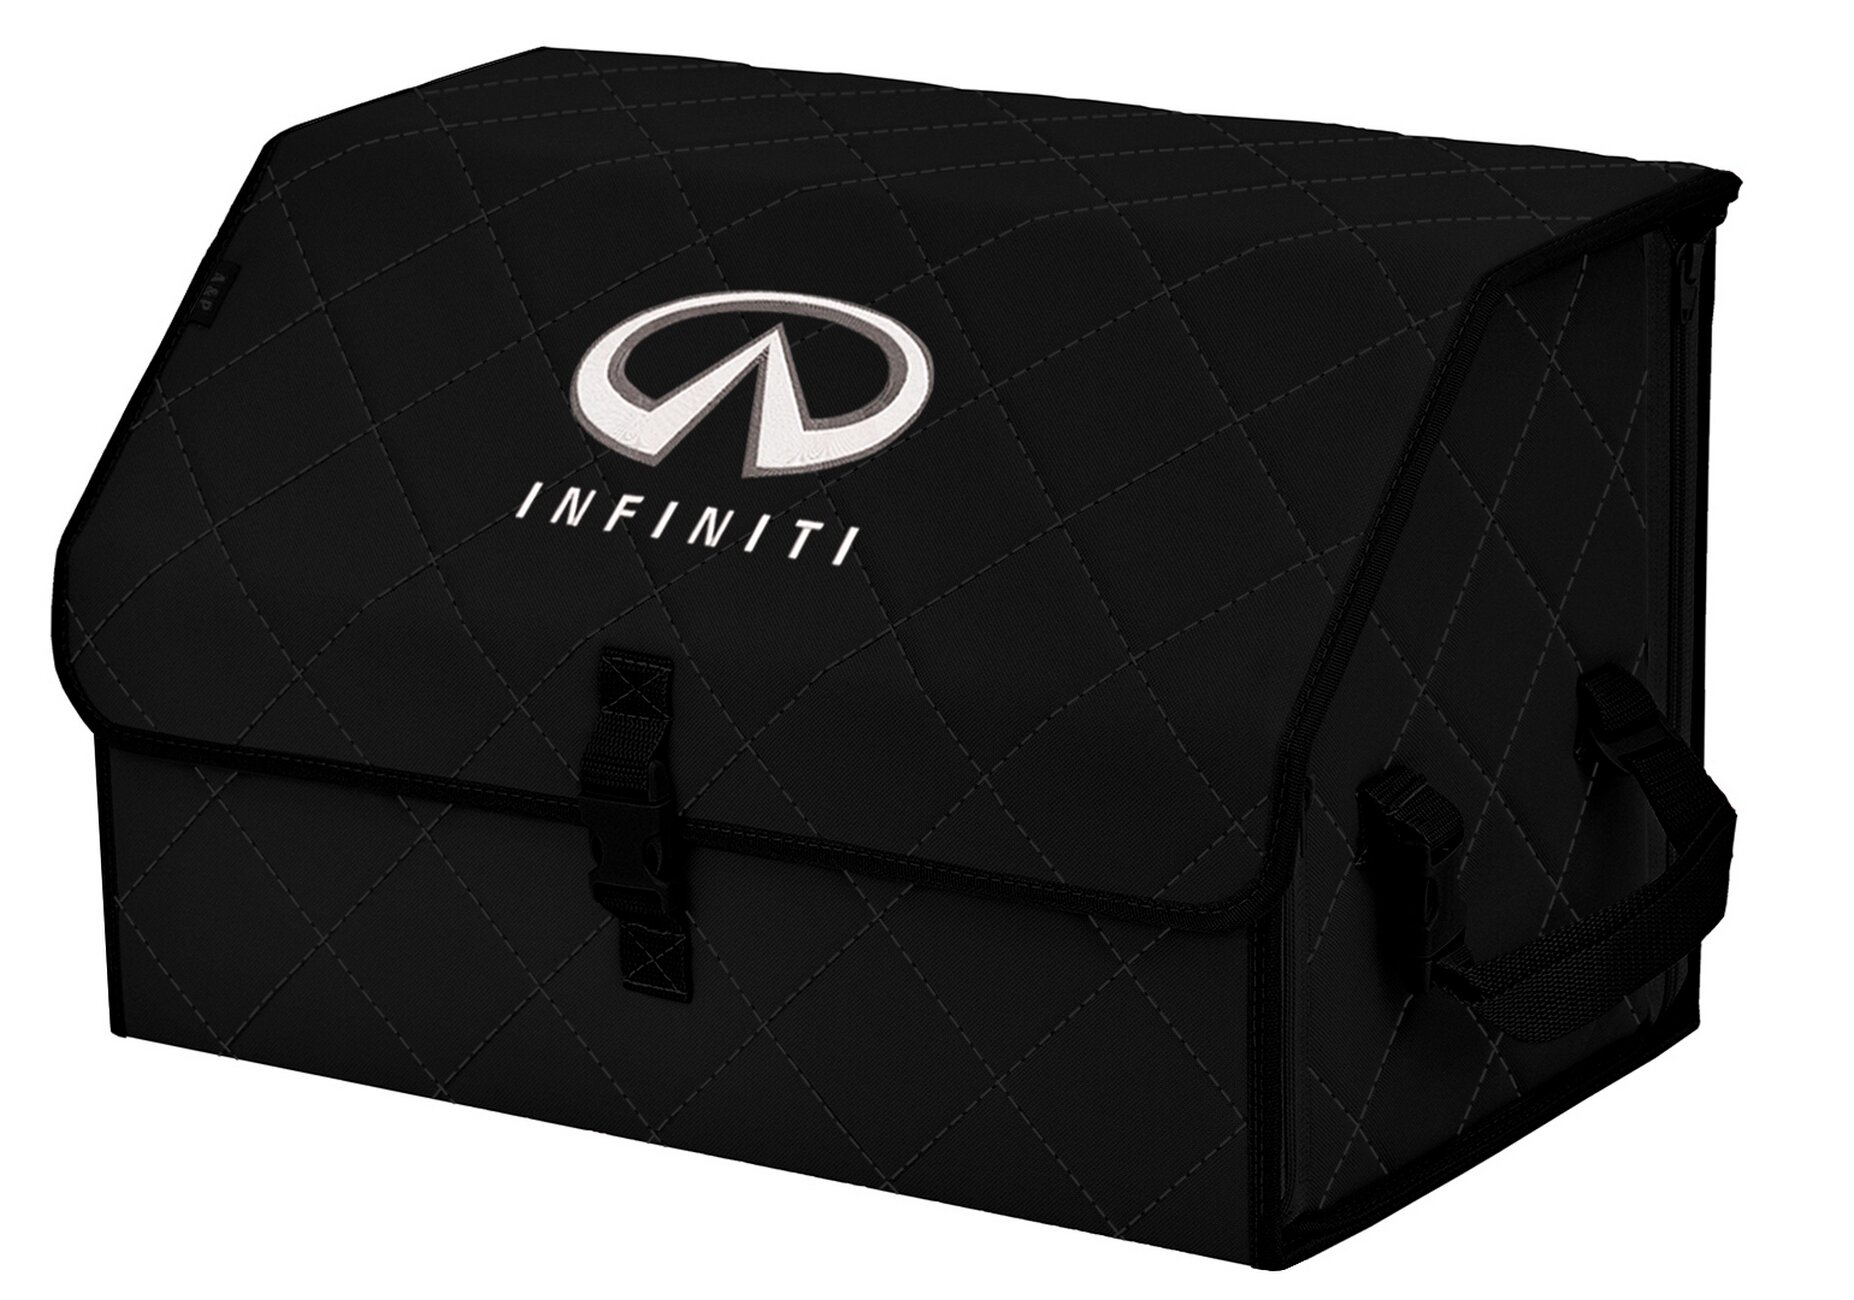 Органайзер-саквояж в багажник "Союз" (размер L). Цвет: черный с черной прострочкой Ромб и вышивкой Infiniti (Инфинити).